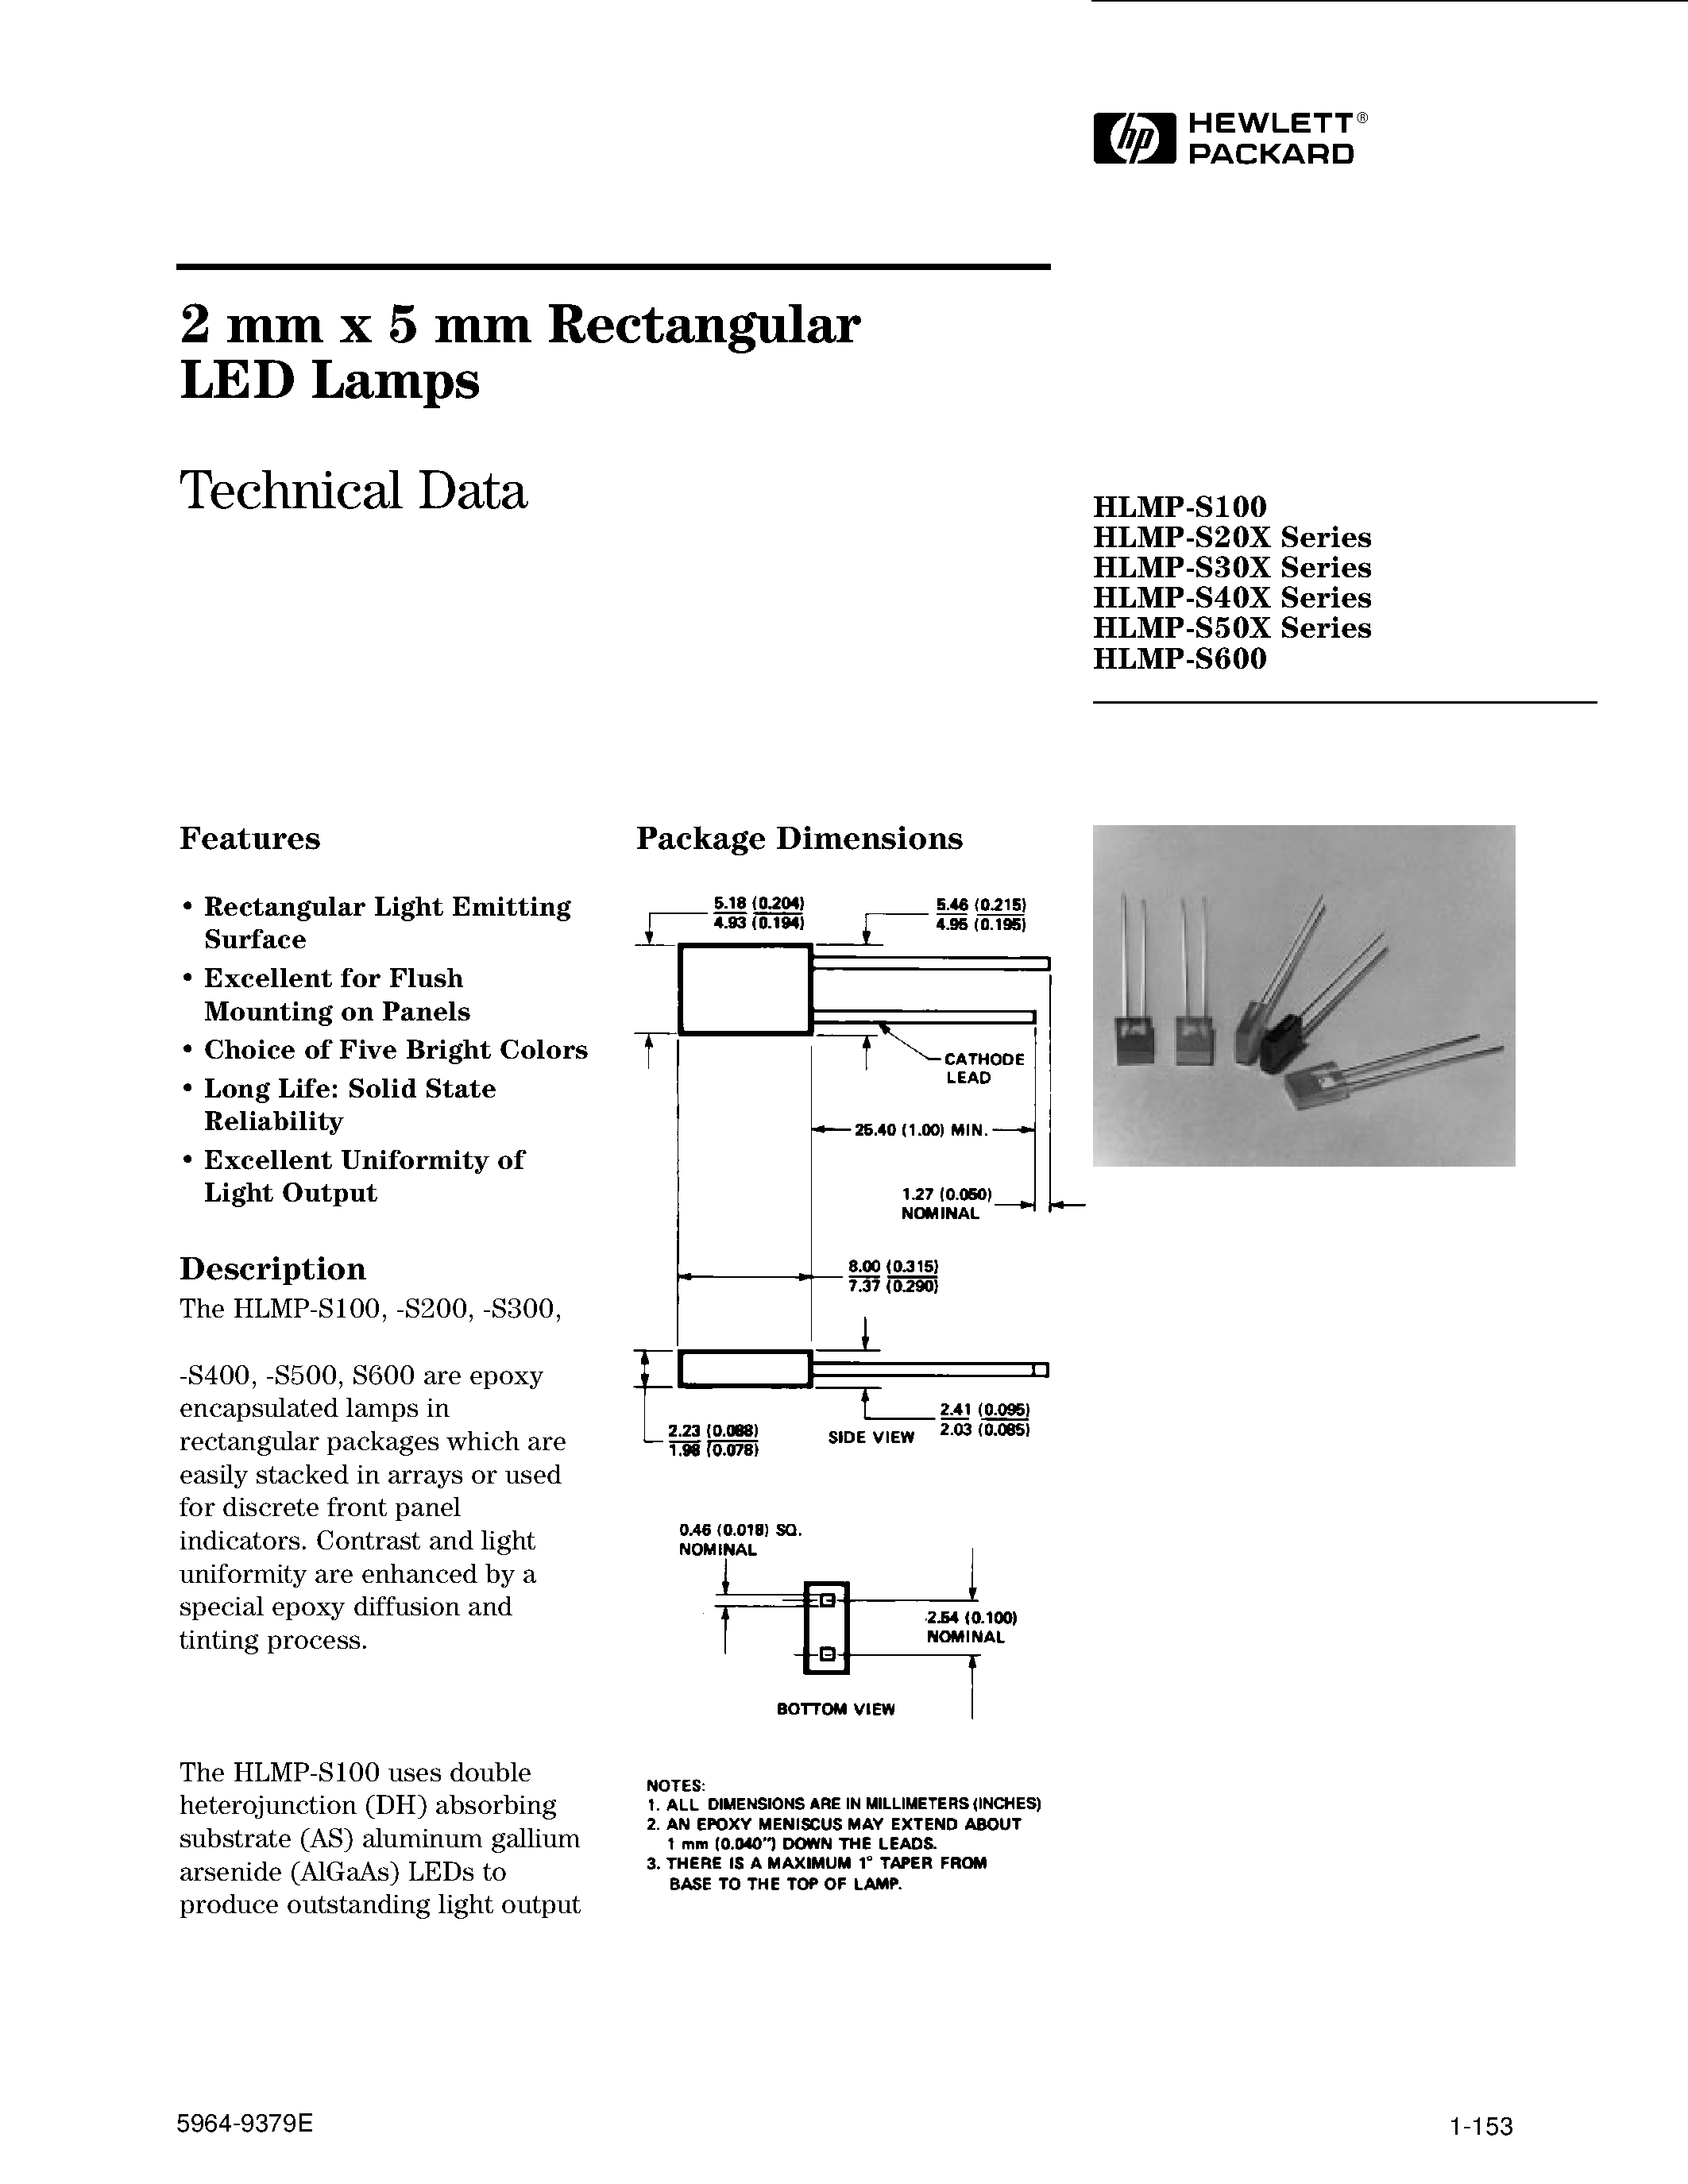 Даташит HLMP-S301 - 2 mm x 5 mm Rectangular LED Lamps страница 1